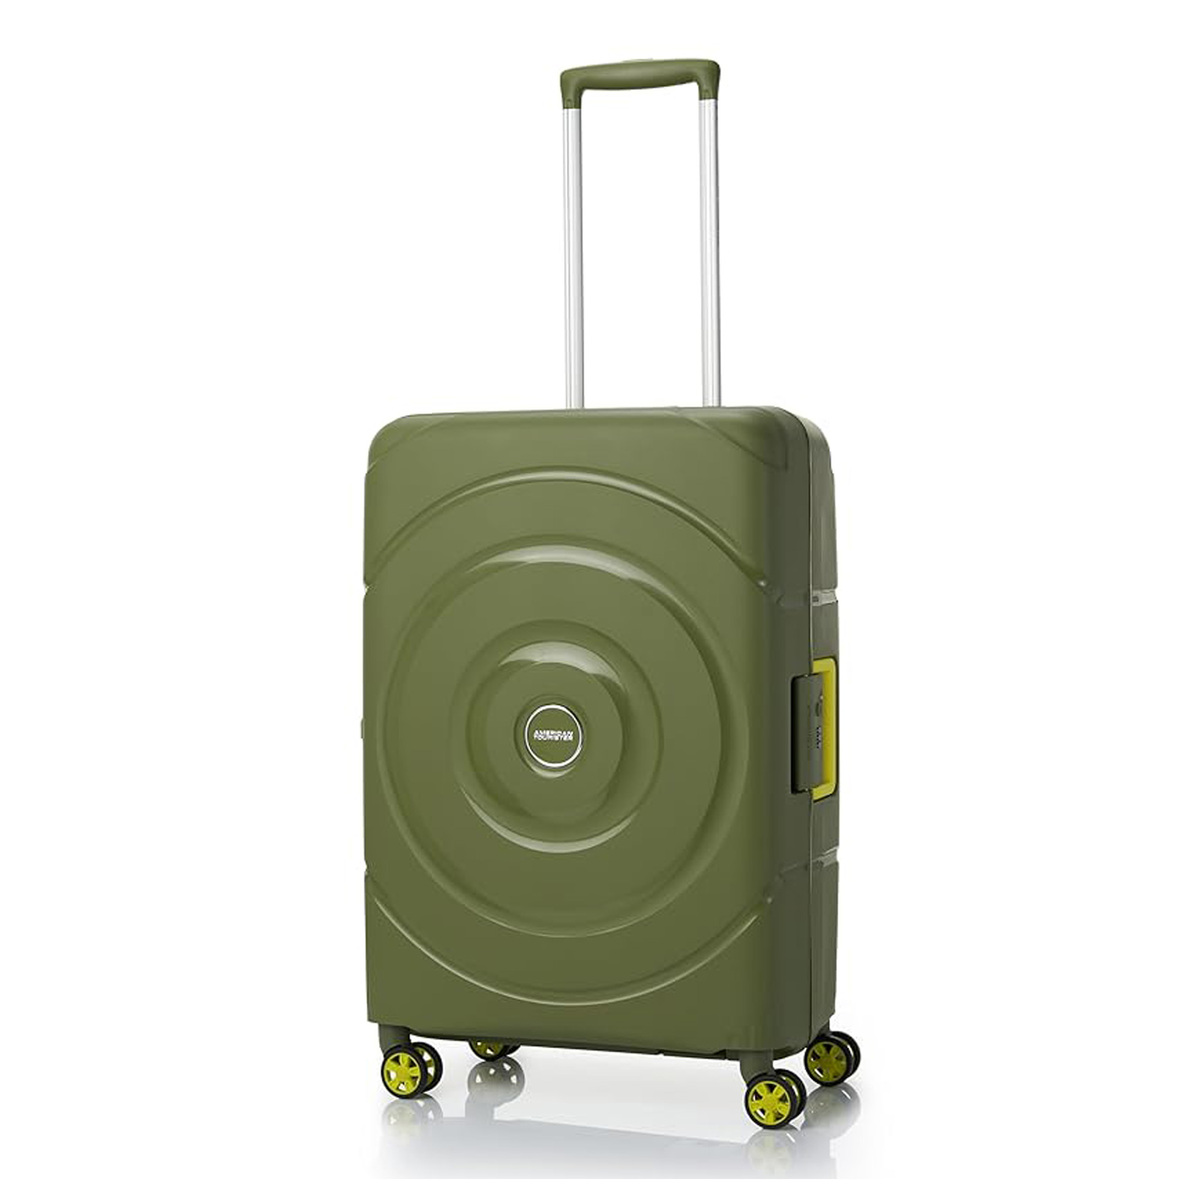 امريكان توريستر حقيبة سفر دوارة بعجلات صلبة سبينر مع قفل TSA، 55 سم، أخضر زيتوني